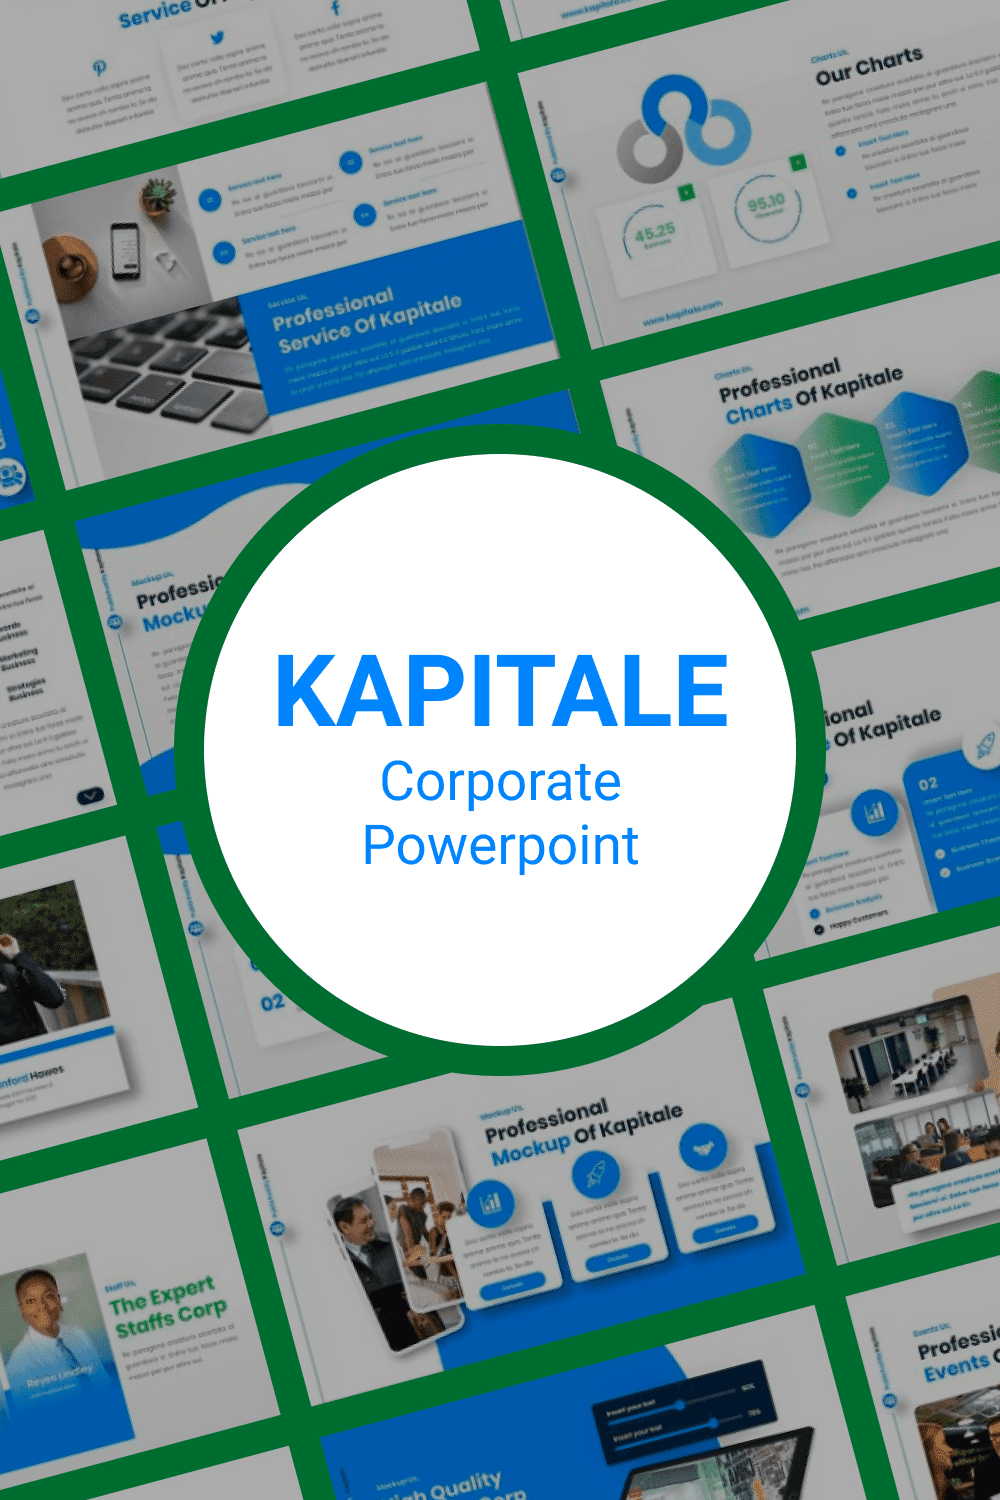 Kapitale Corporate Powerpoint Pinterest.